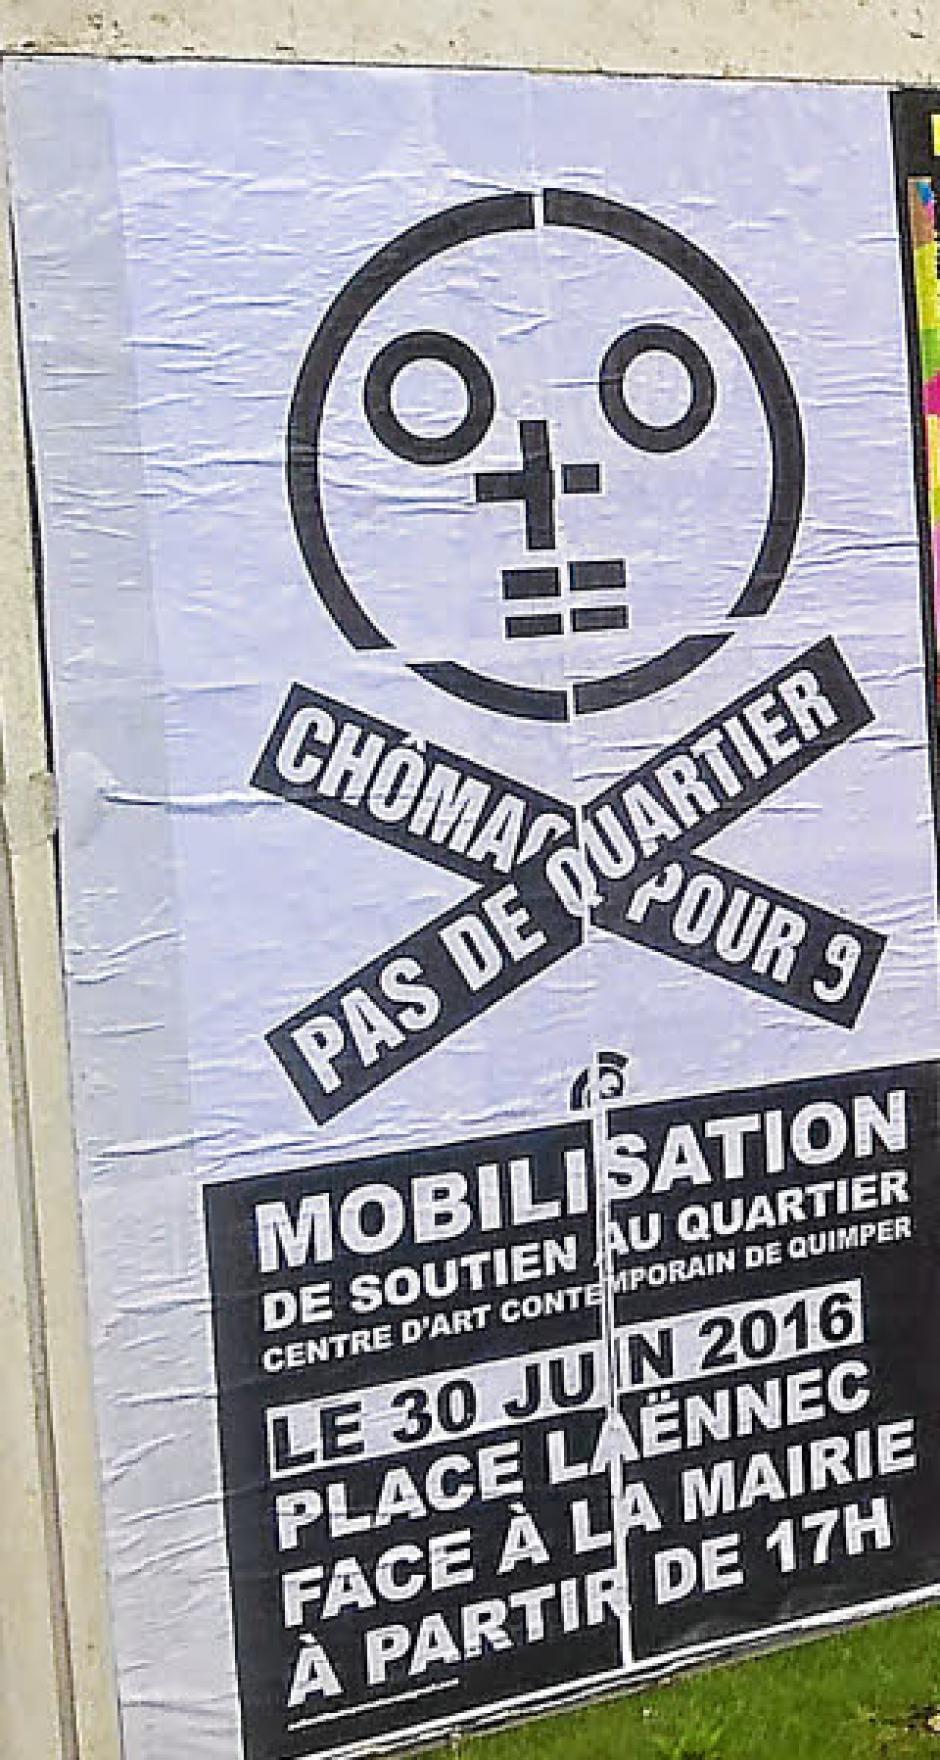 Jeudi 30 juin 2016 à 17h manifestation de soutien au Quartier devant la mairie de Quimper